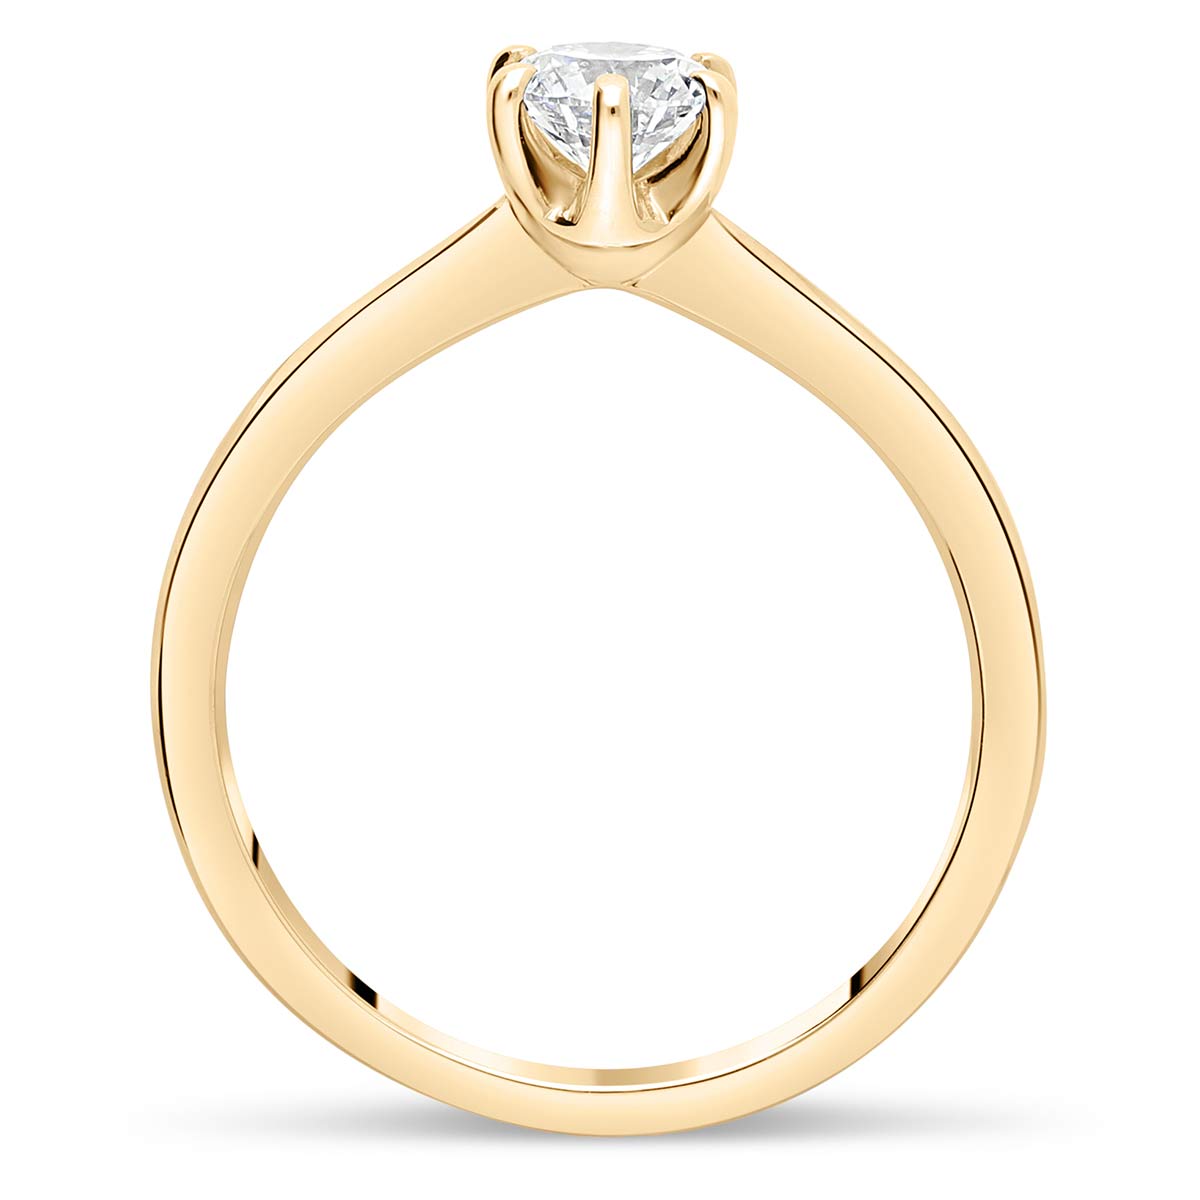 manae-solitaires-diamants-certifies-style-classique-or-jaune-750-